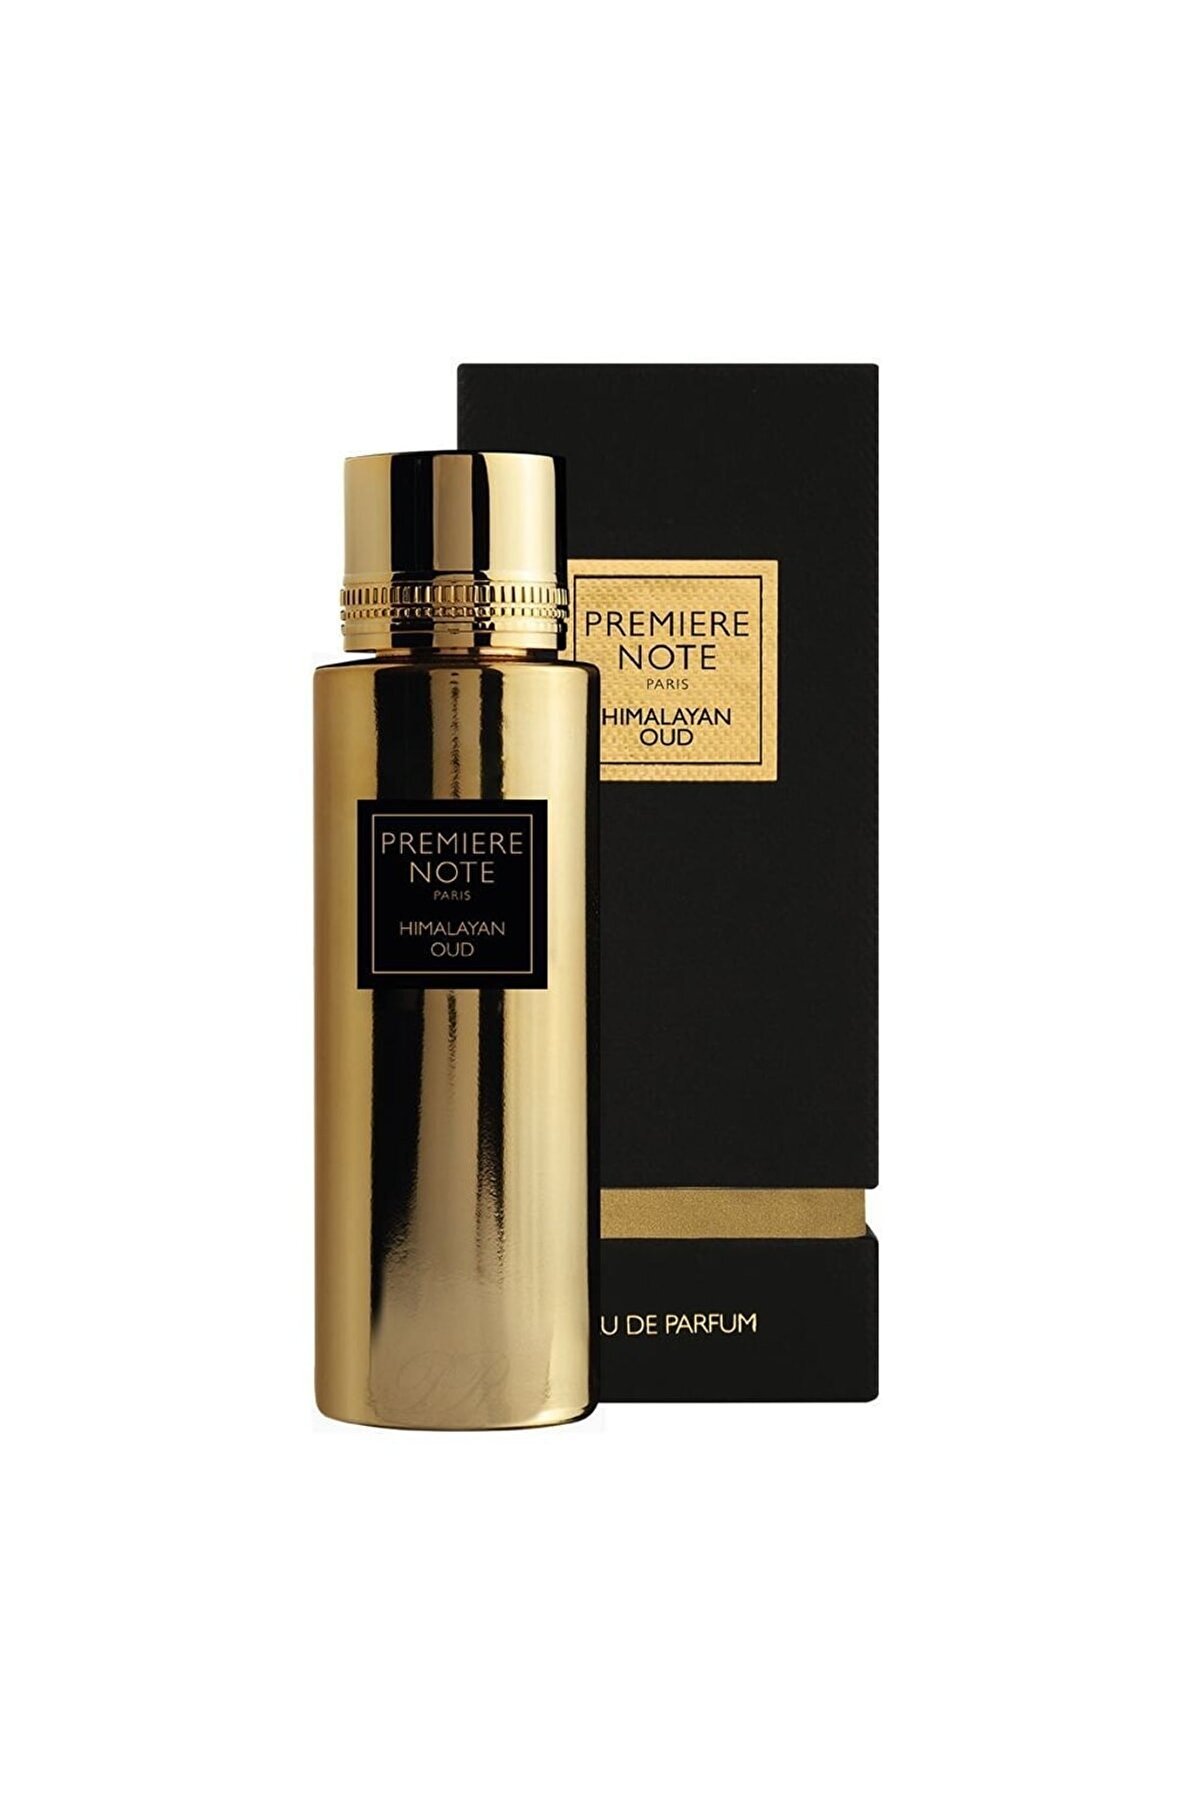 PREMIERE NOTE PARİS Parfum Himalayan Oud 100 ml